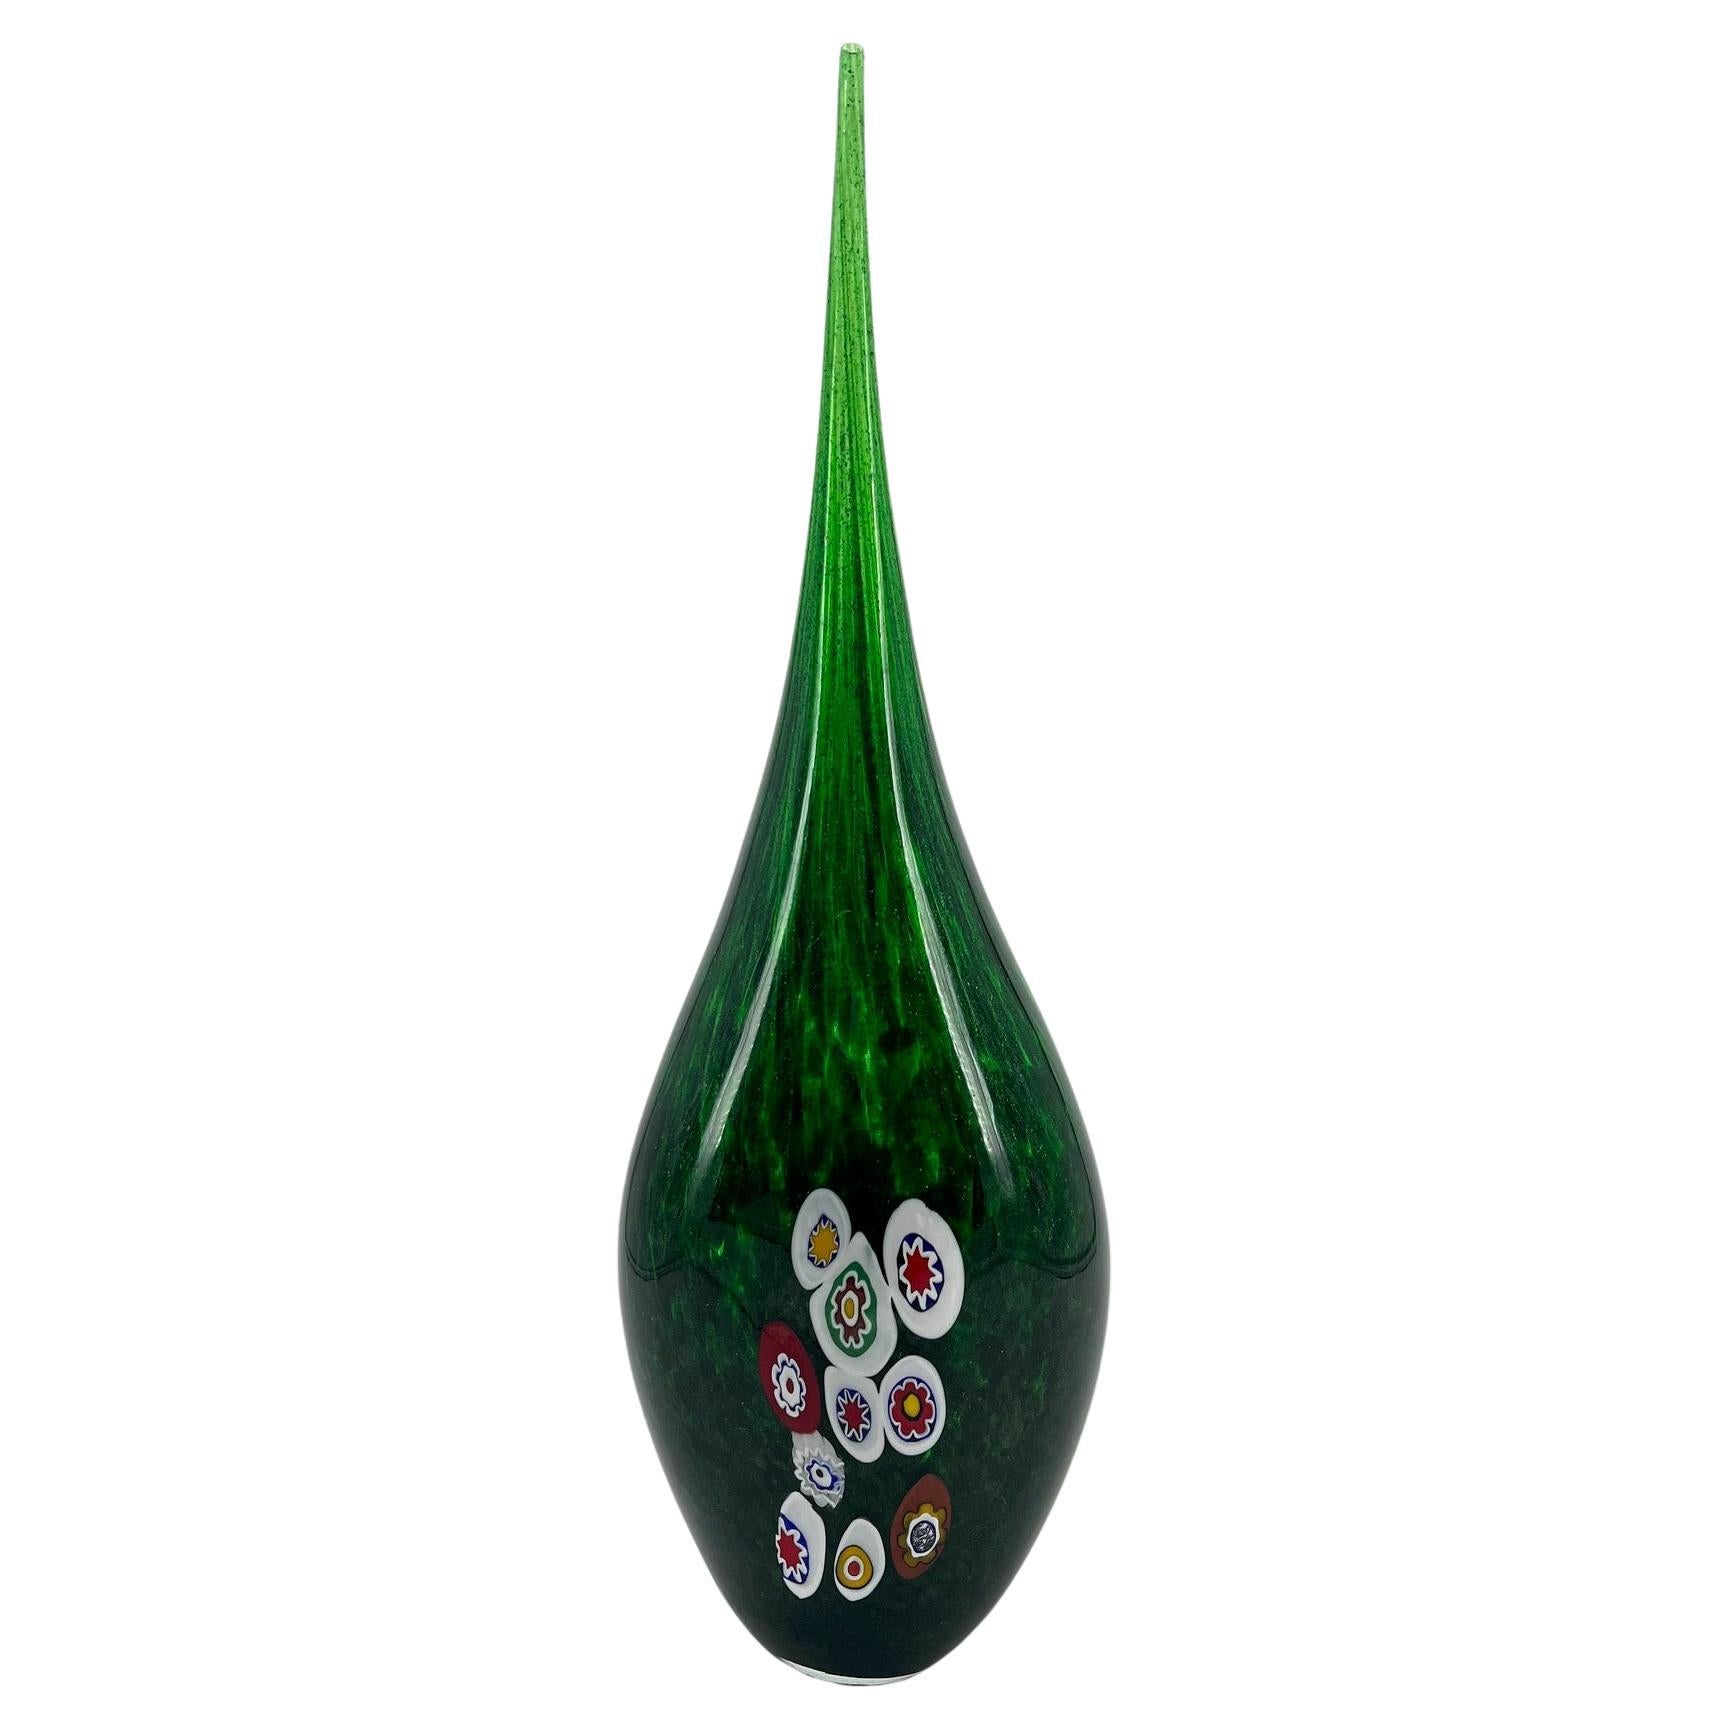 1295 Murano Hand made Green Avventurina Murrine Vase For Sale